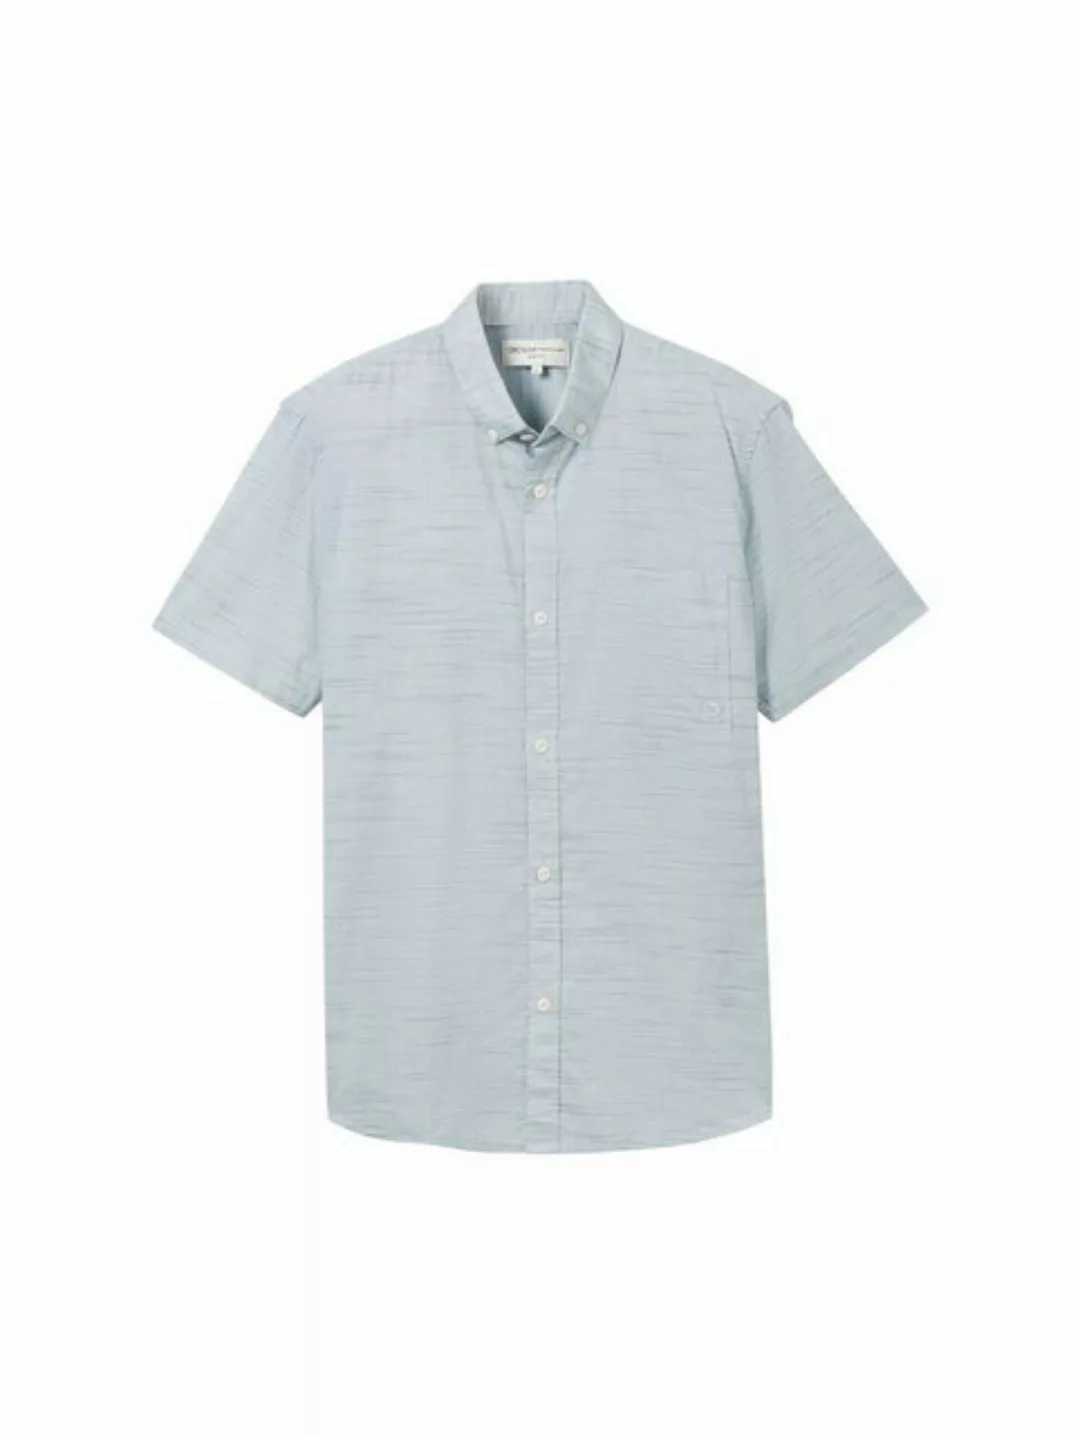 TOM TAILOR Denim T-Shirt striped slubyarn shirt, white navy green structure günstig online kaufen